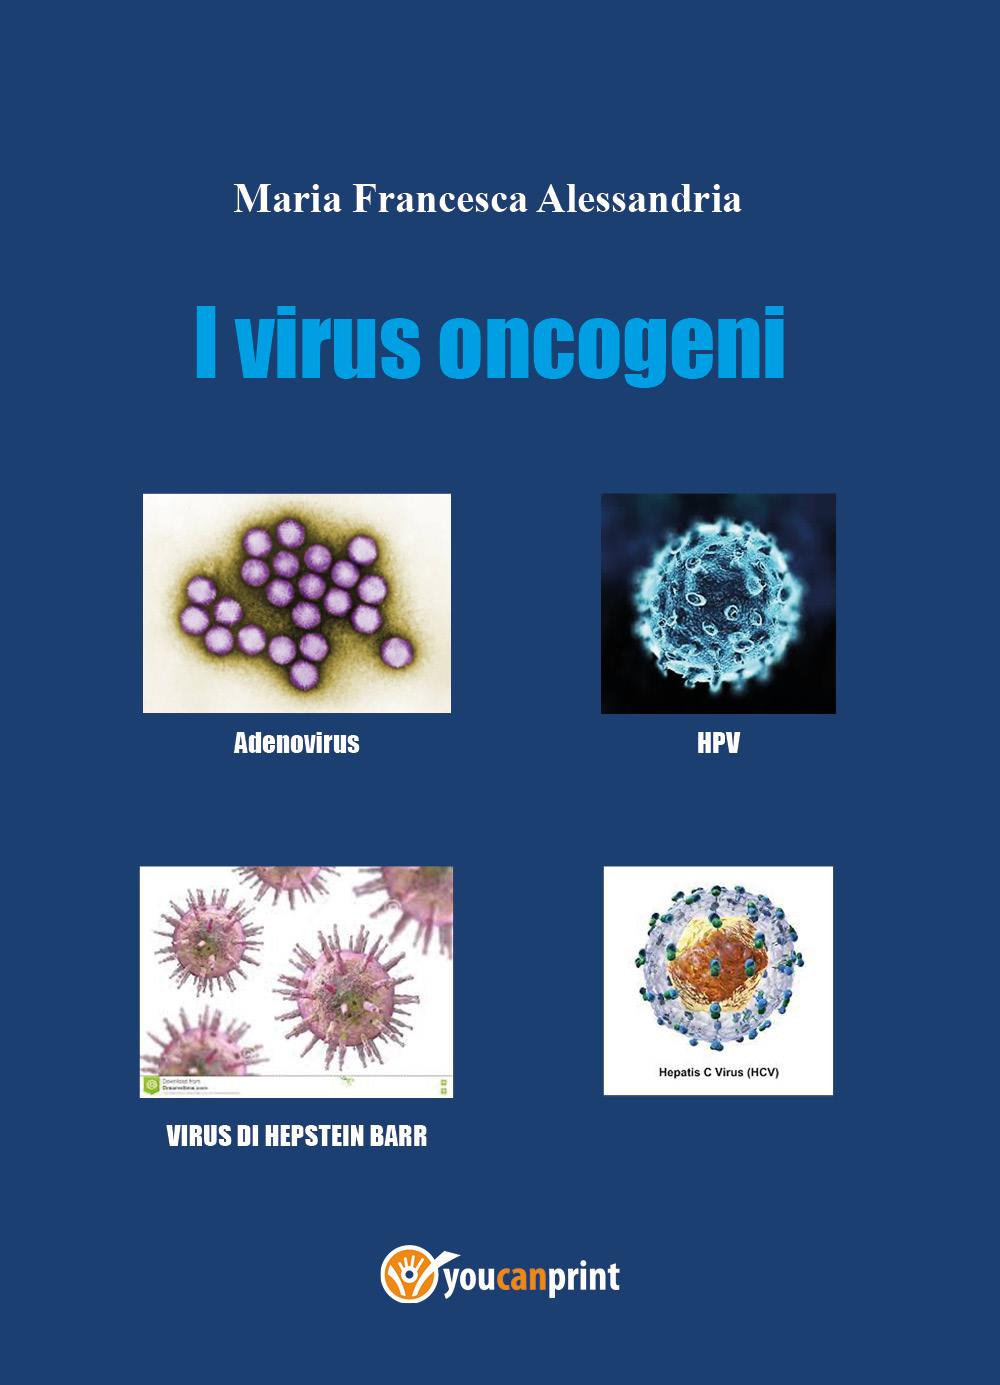 I virus oncogeni